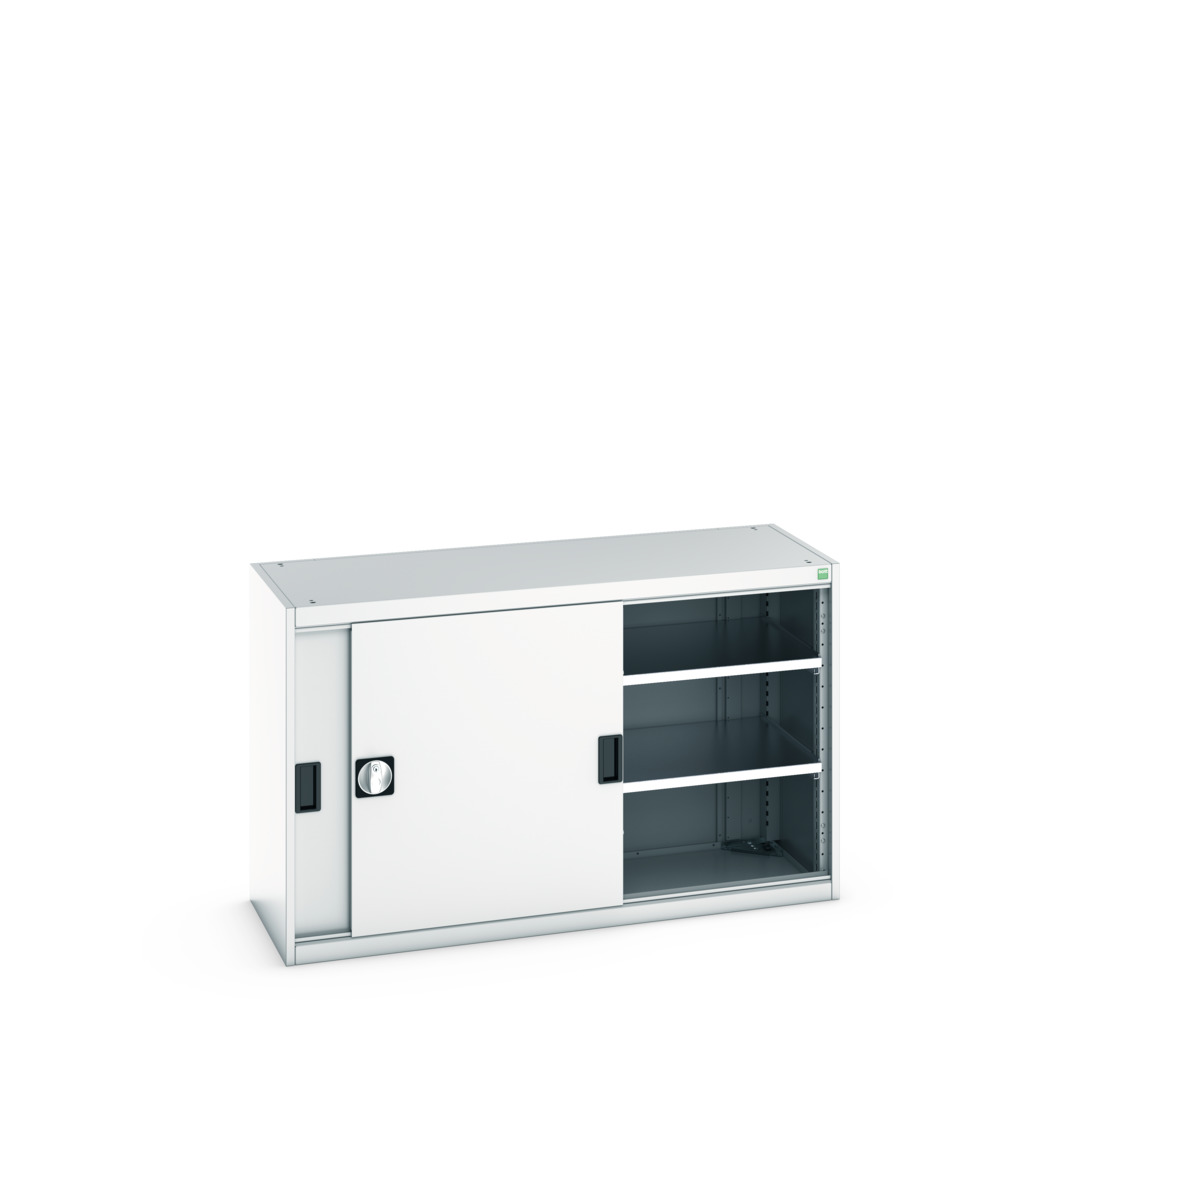 40014059.16V - cubio cupboard